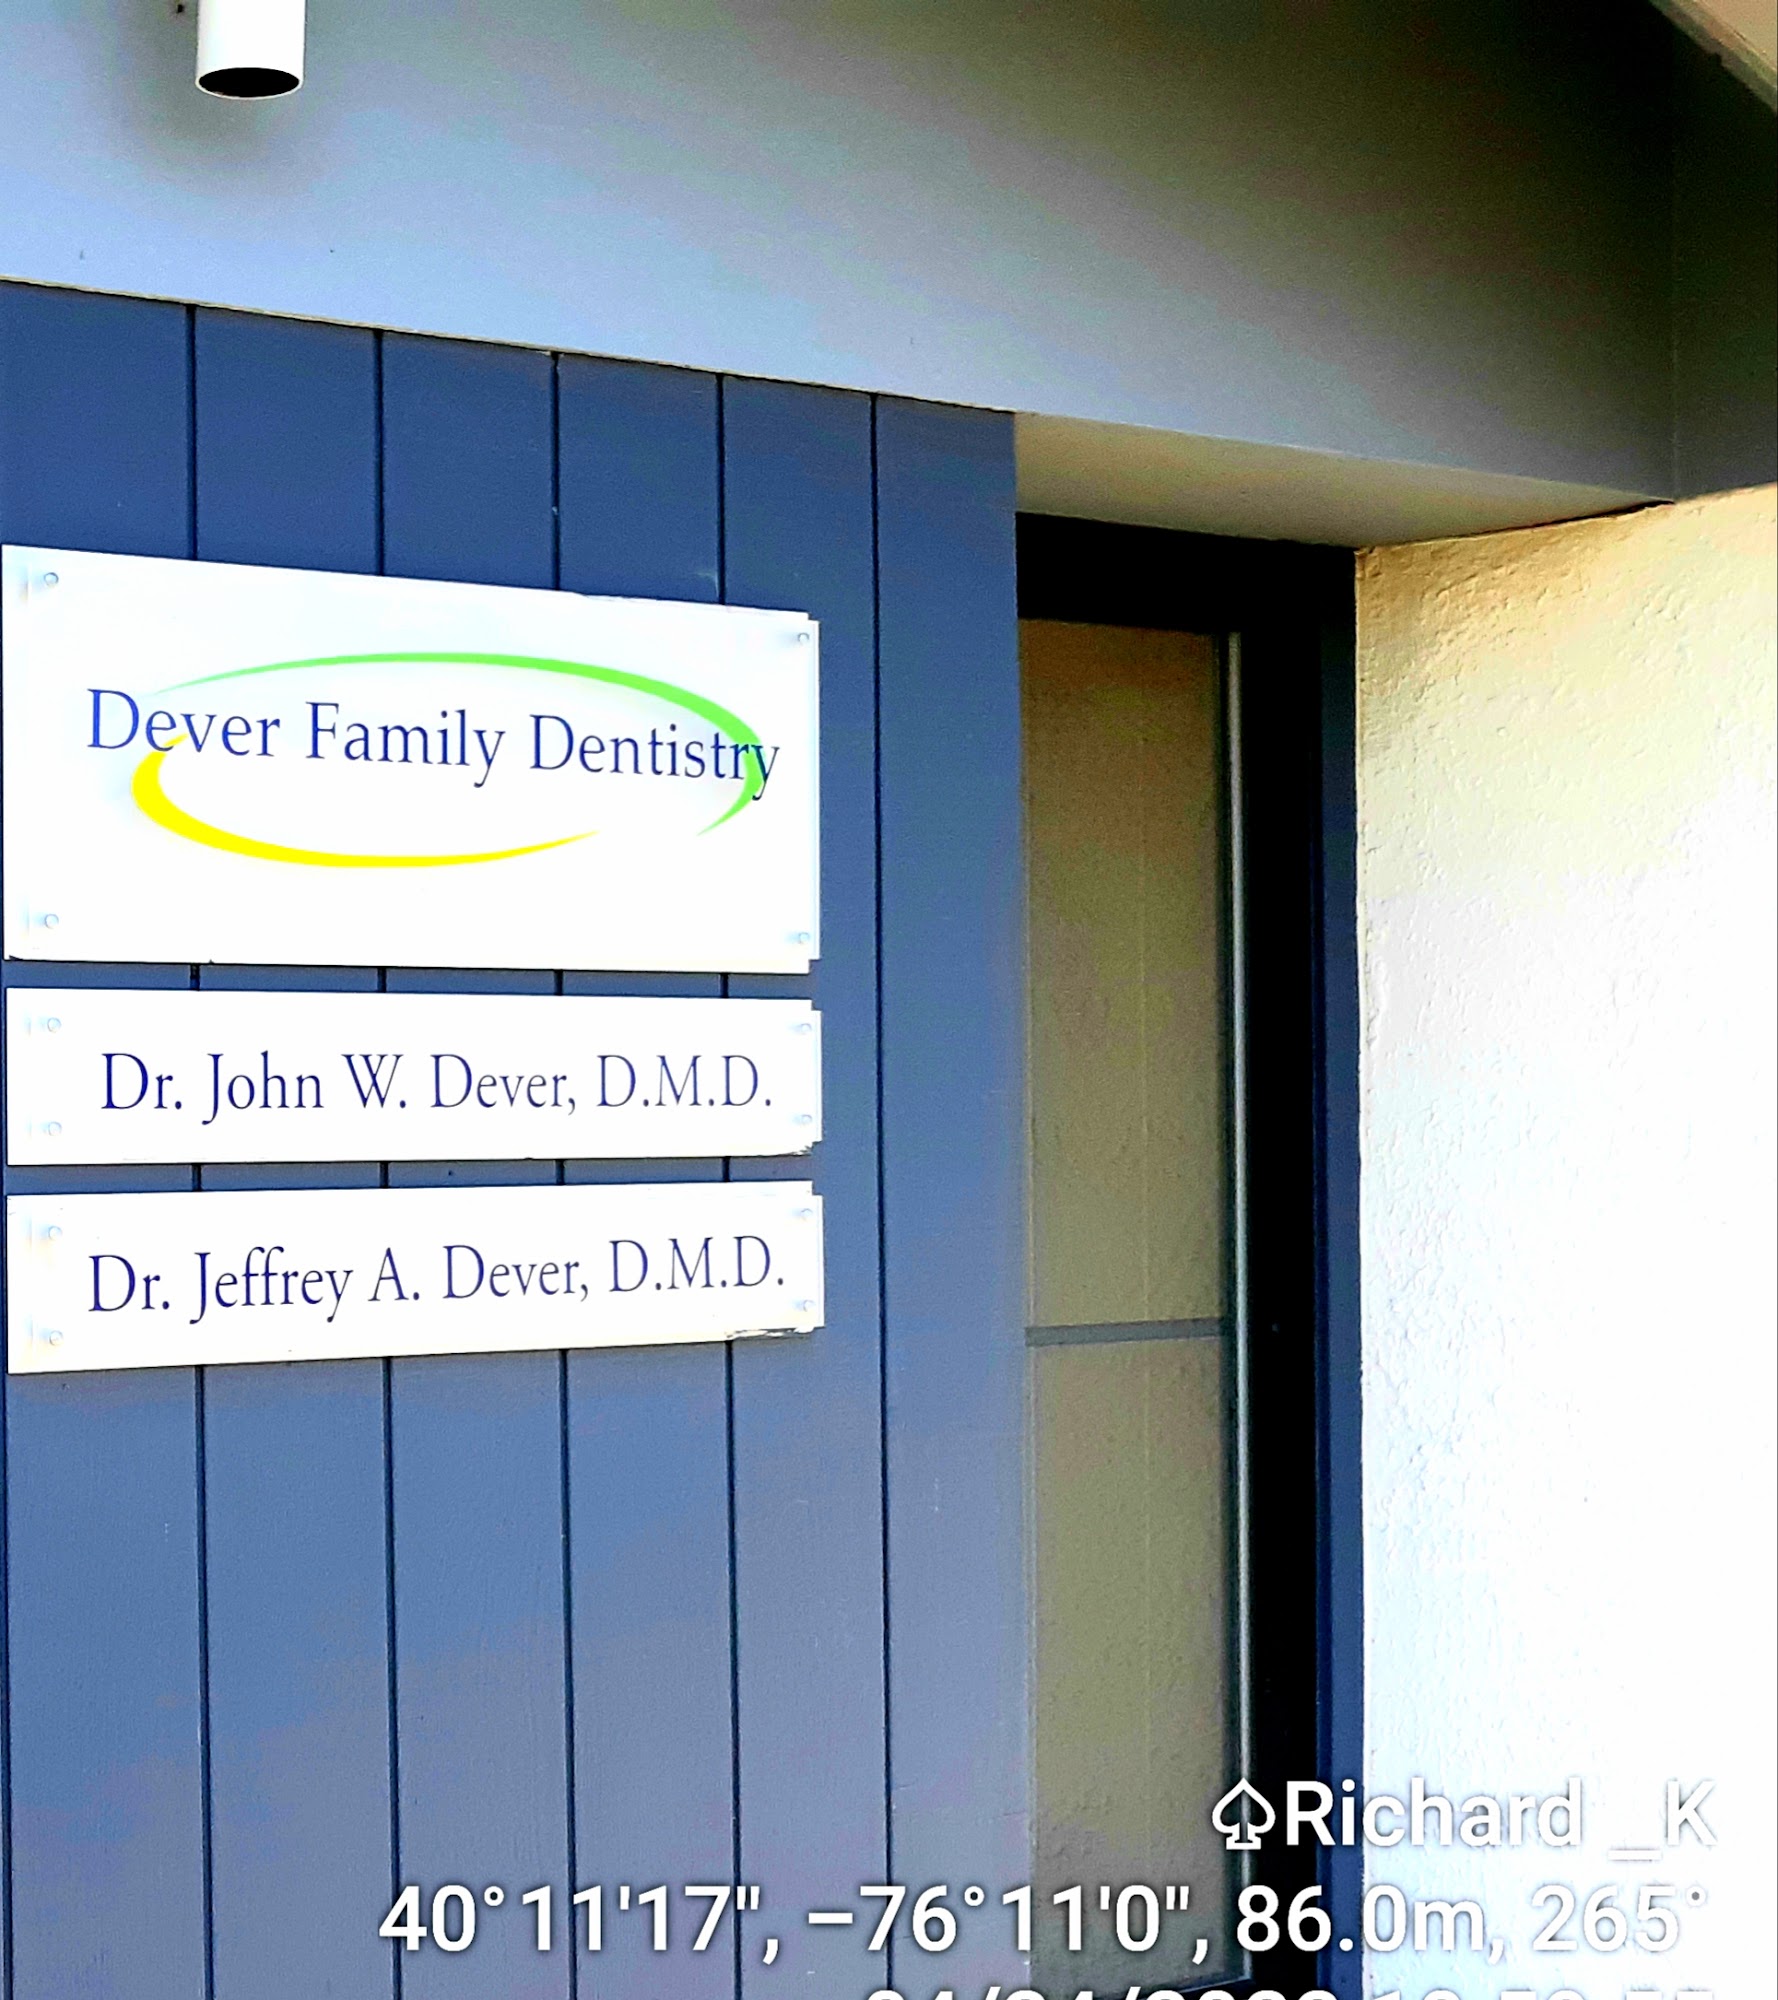 Dever Family Dentistry